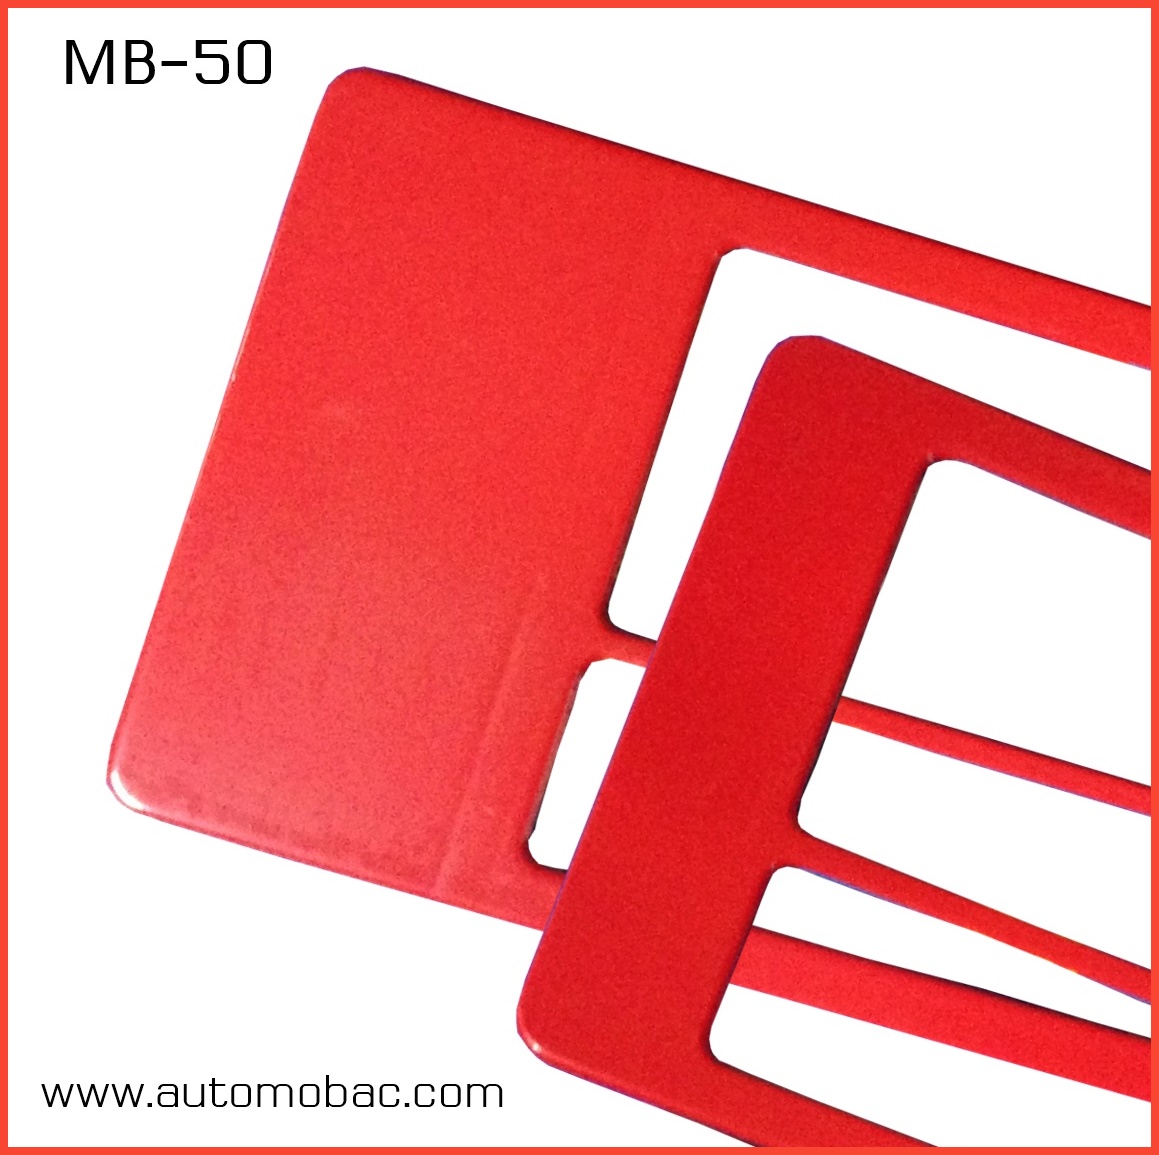 กรอบป้ายทะเบียนรถยนต์ กันน้ำ MB-50 สีแดงล้วน แบบสั้นยาว ระบบคลิปล็อค 8 จุด พร้อมน็อตอะไหล่